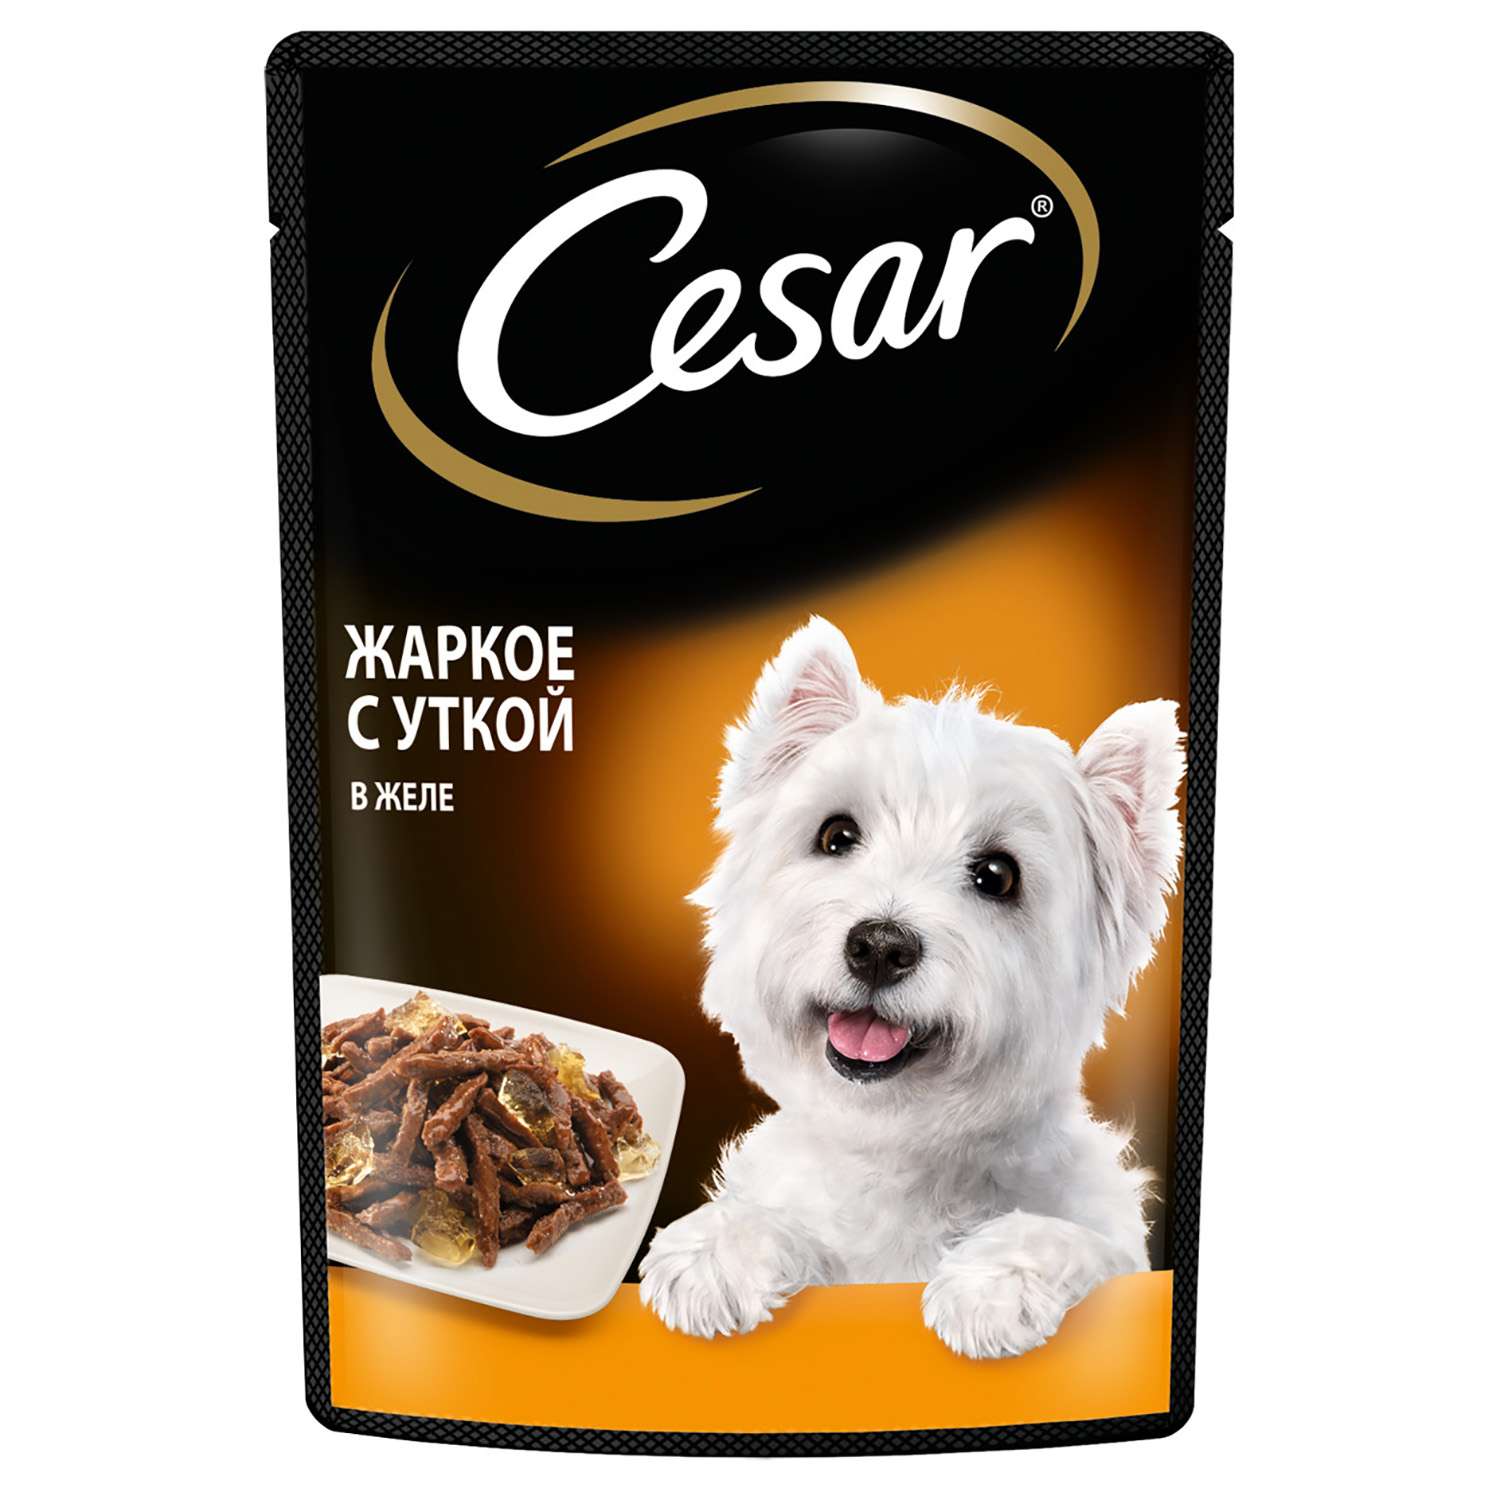 Корм для собак Cesar 85г жаркое с уткой в желе консервированный - фото 1